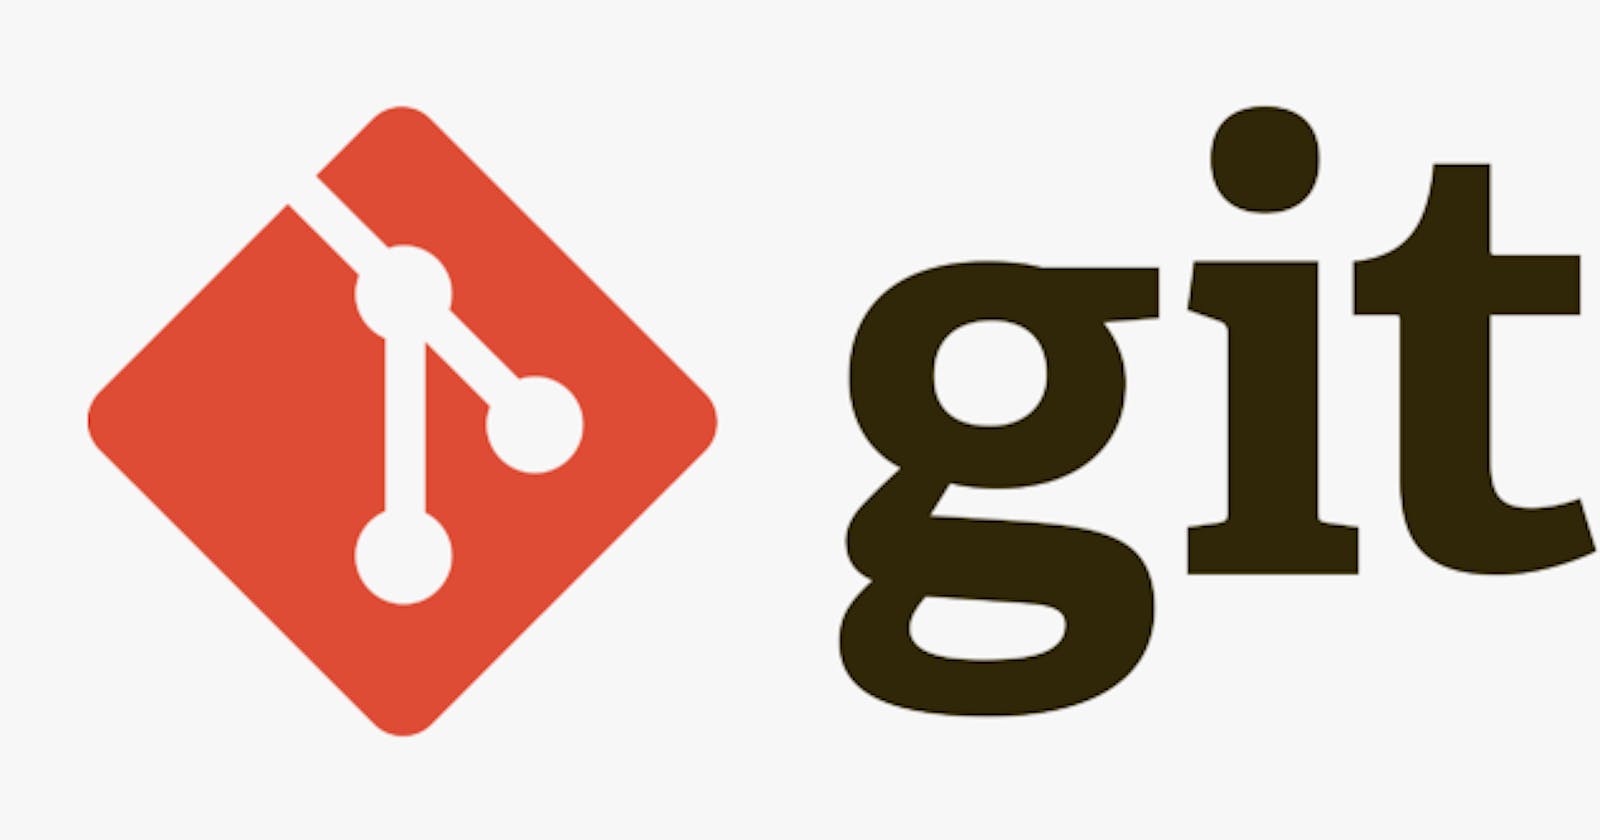 Git isn’t Rocket Science